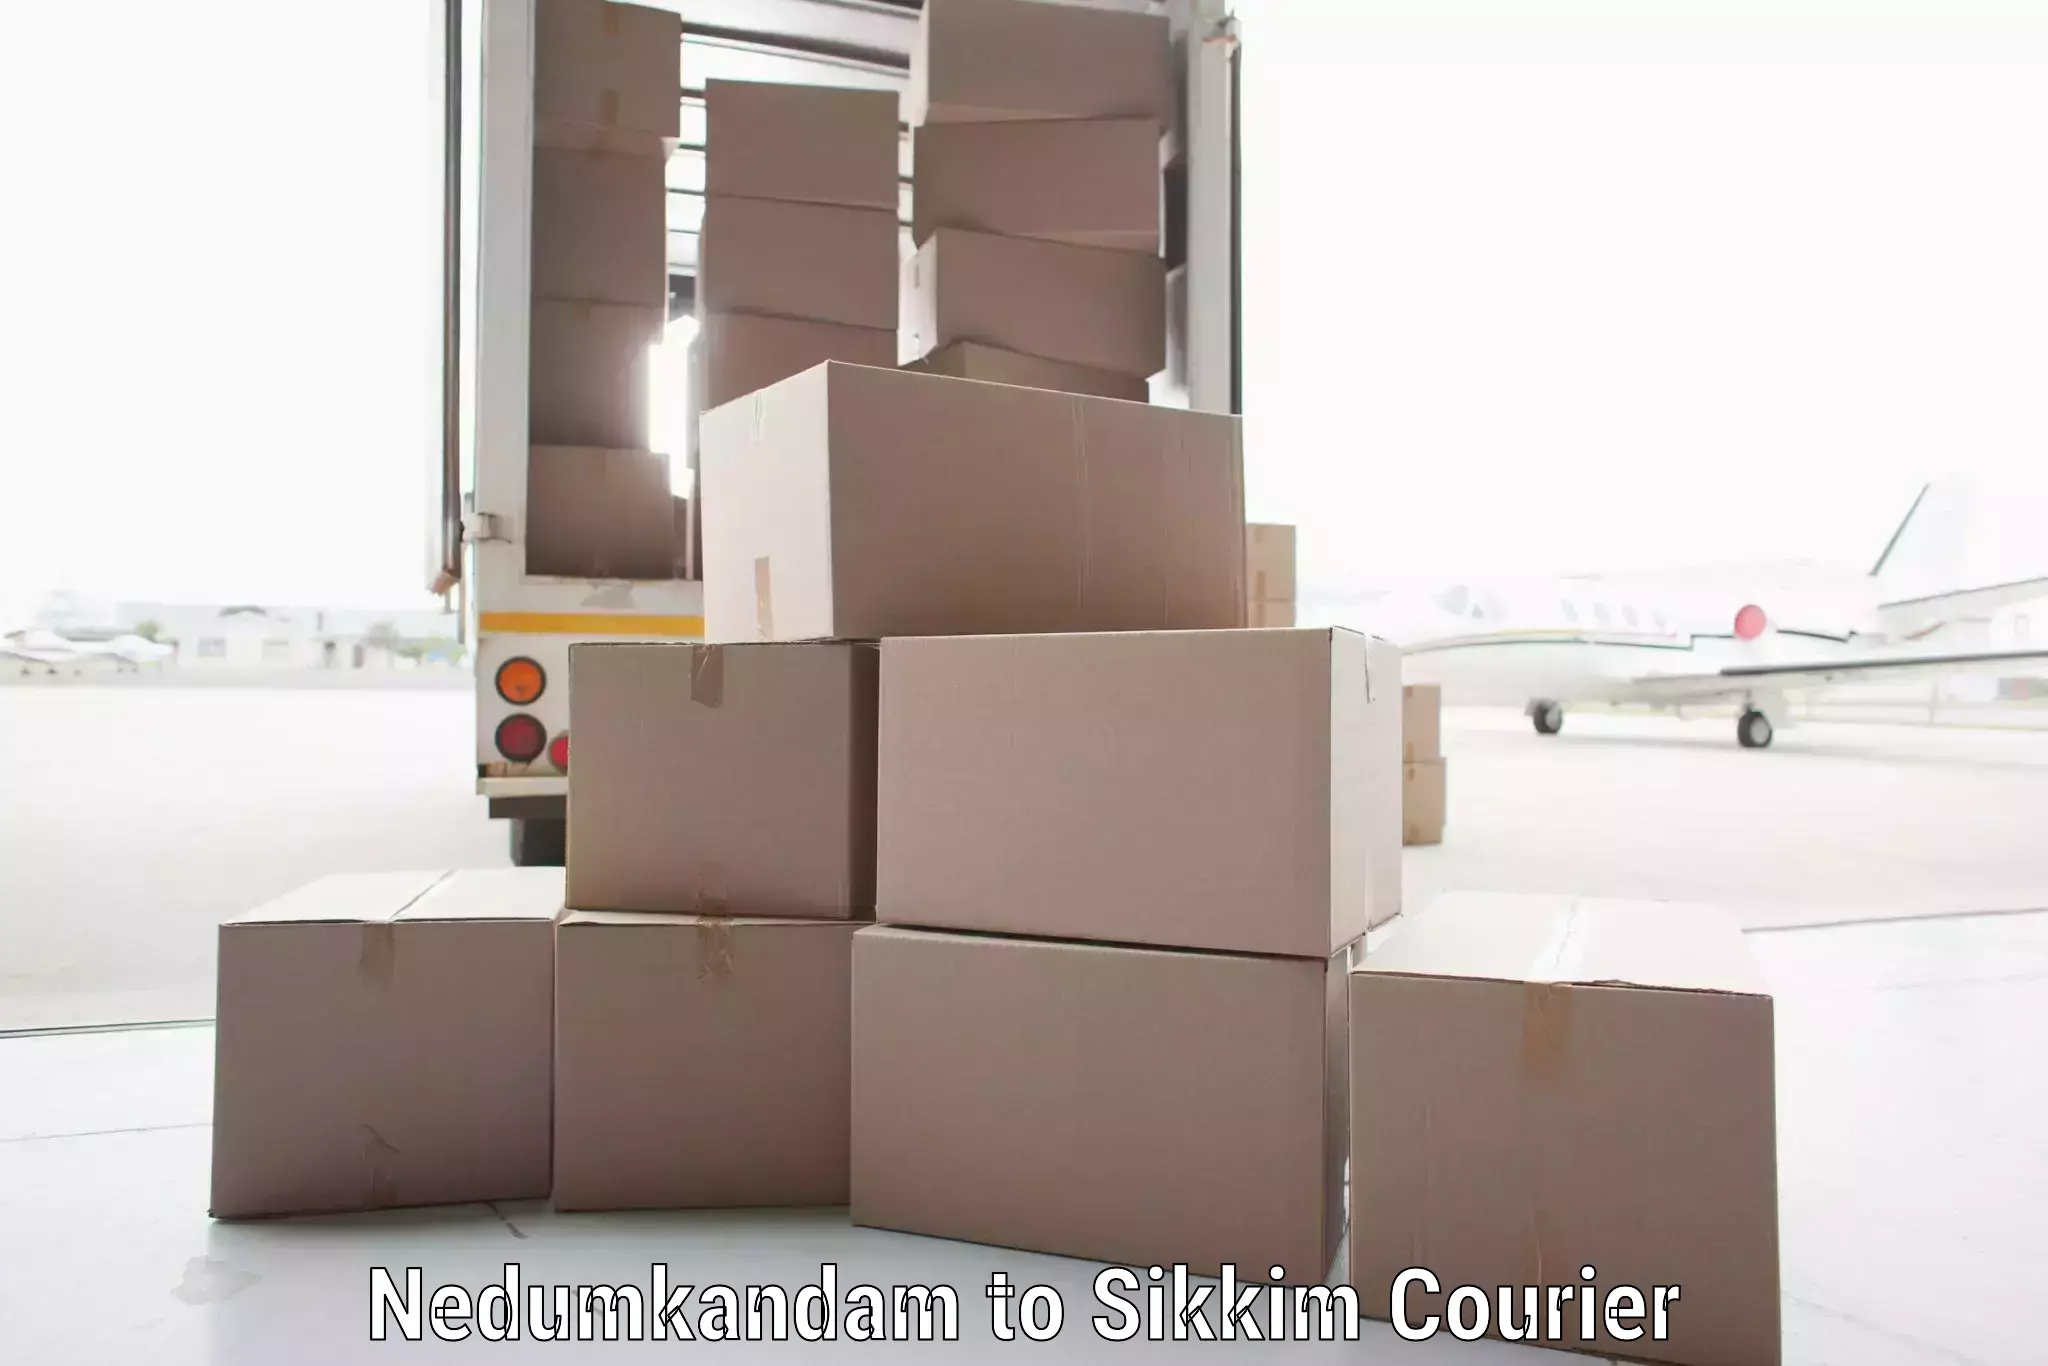 Nationwide shipping capabilities Nedumkandam to West Sikkim